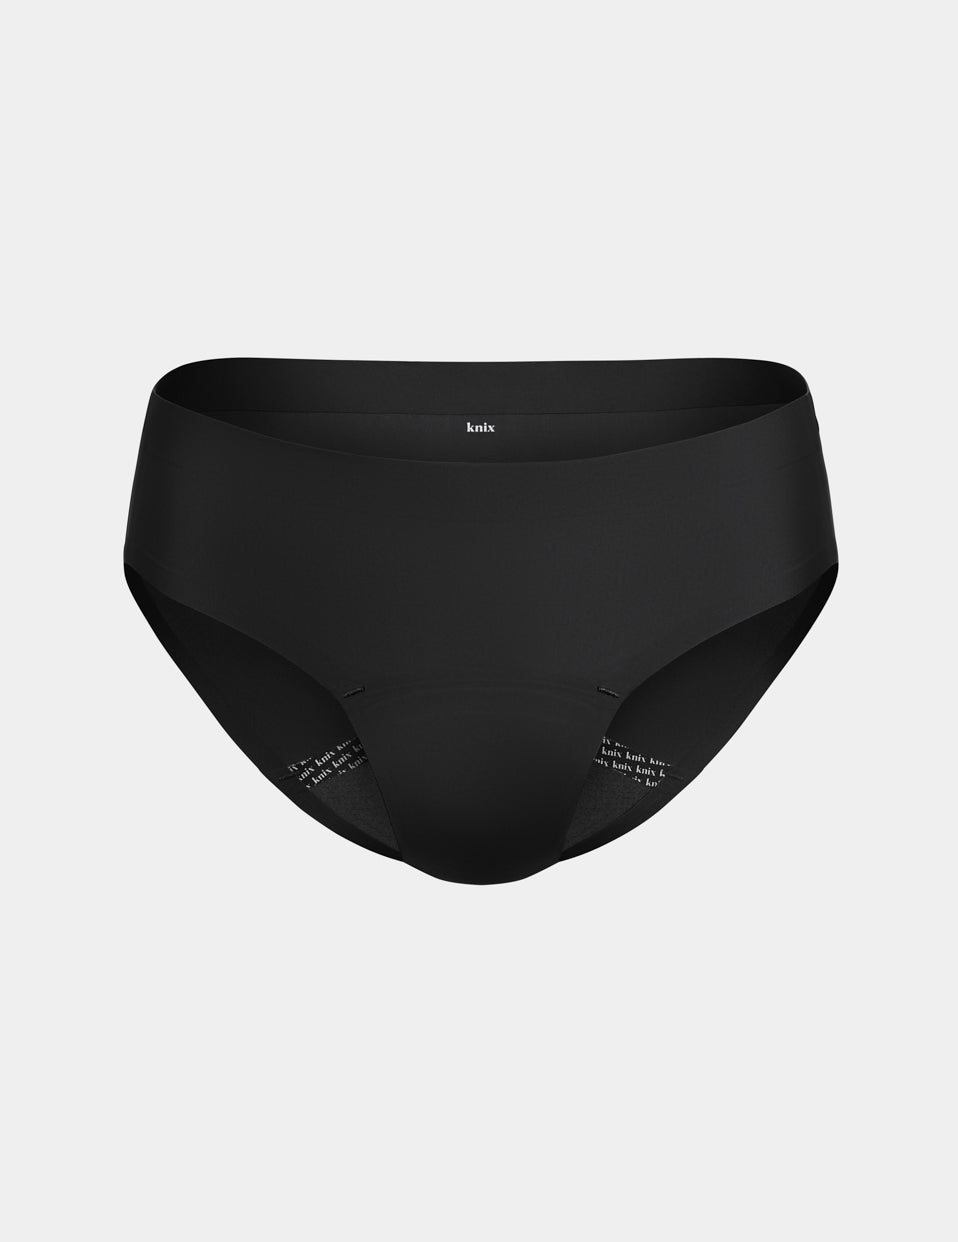 Qvkarw Washable 𝐏eriod Underwear 𝐏eriod Underwear for Women